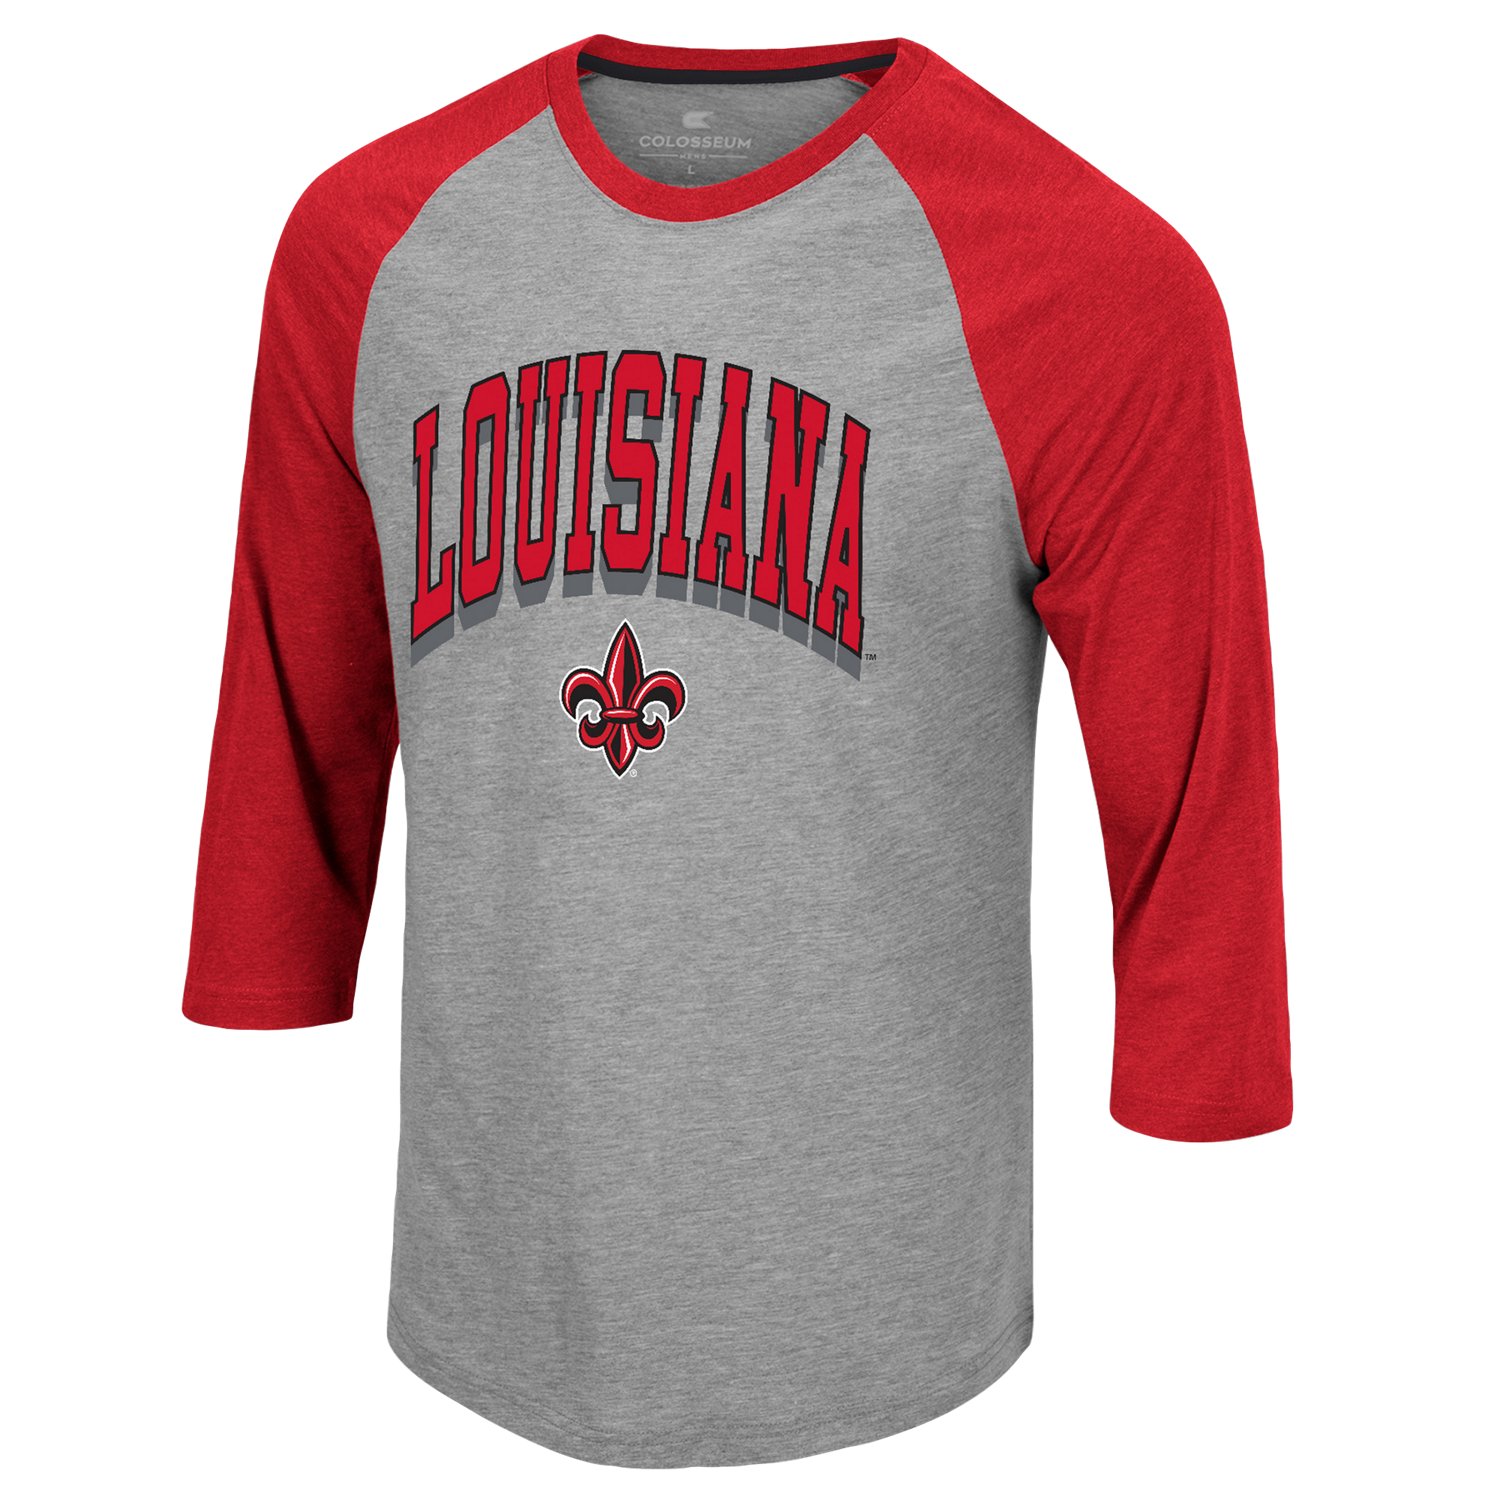 Red Shirts of Louisiana' Men's T-Shirt